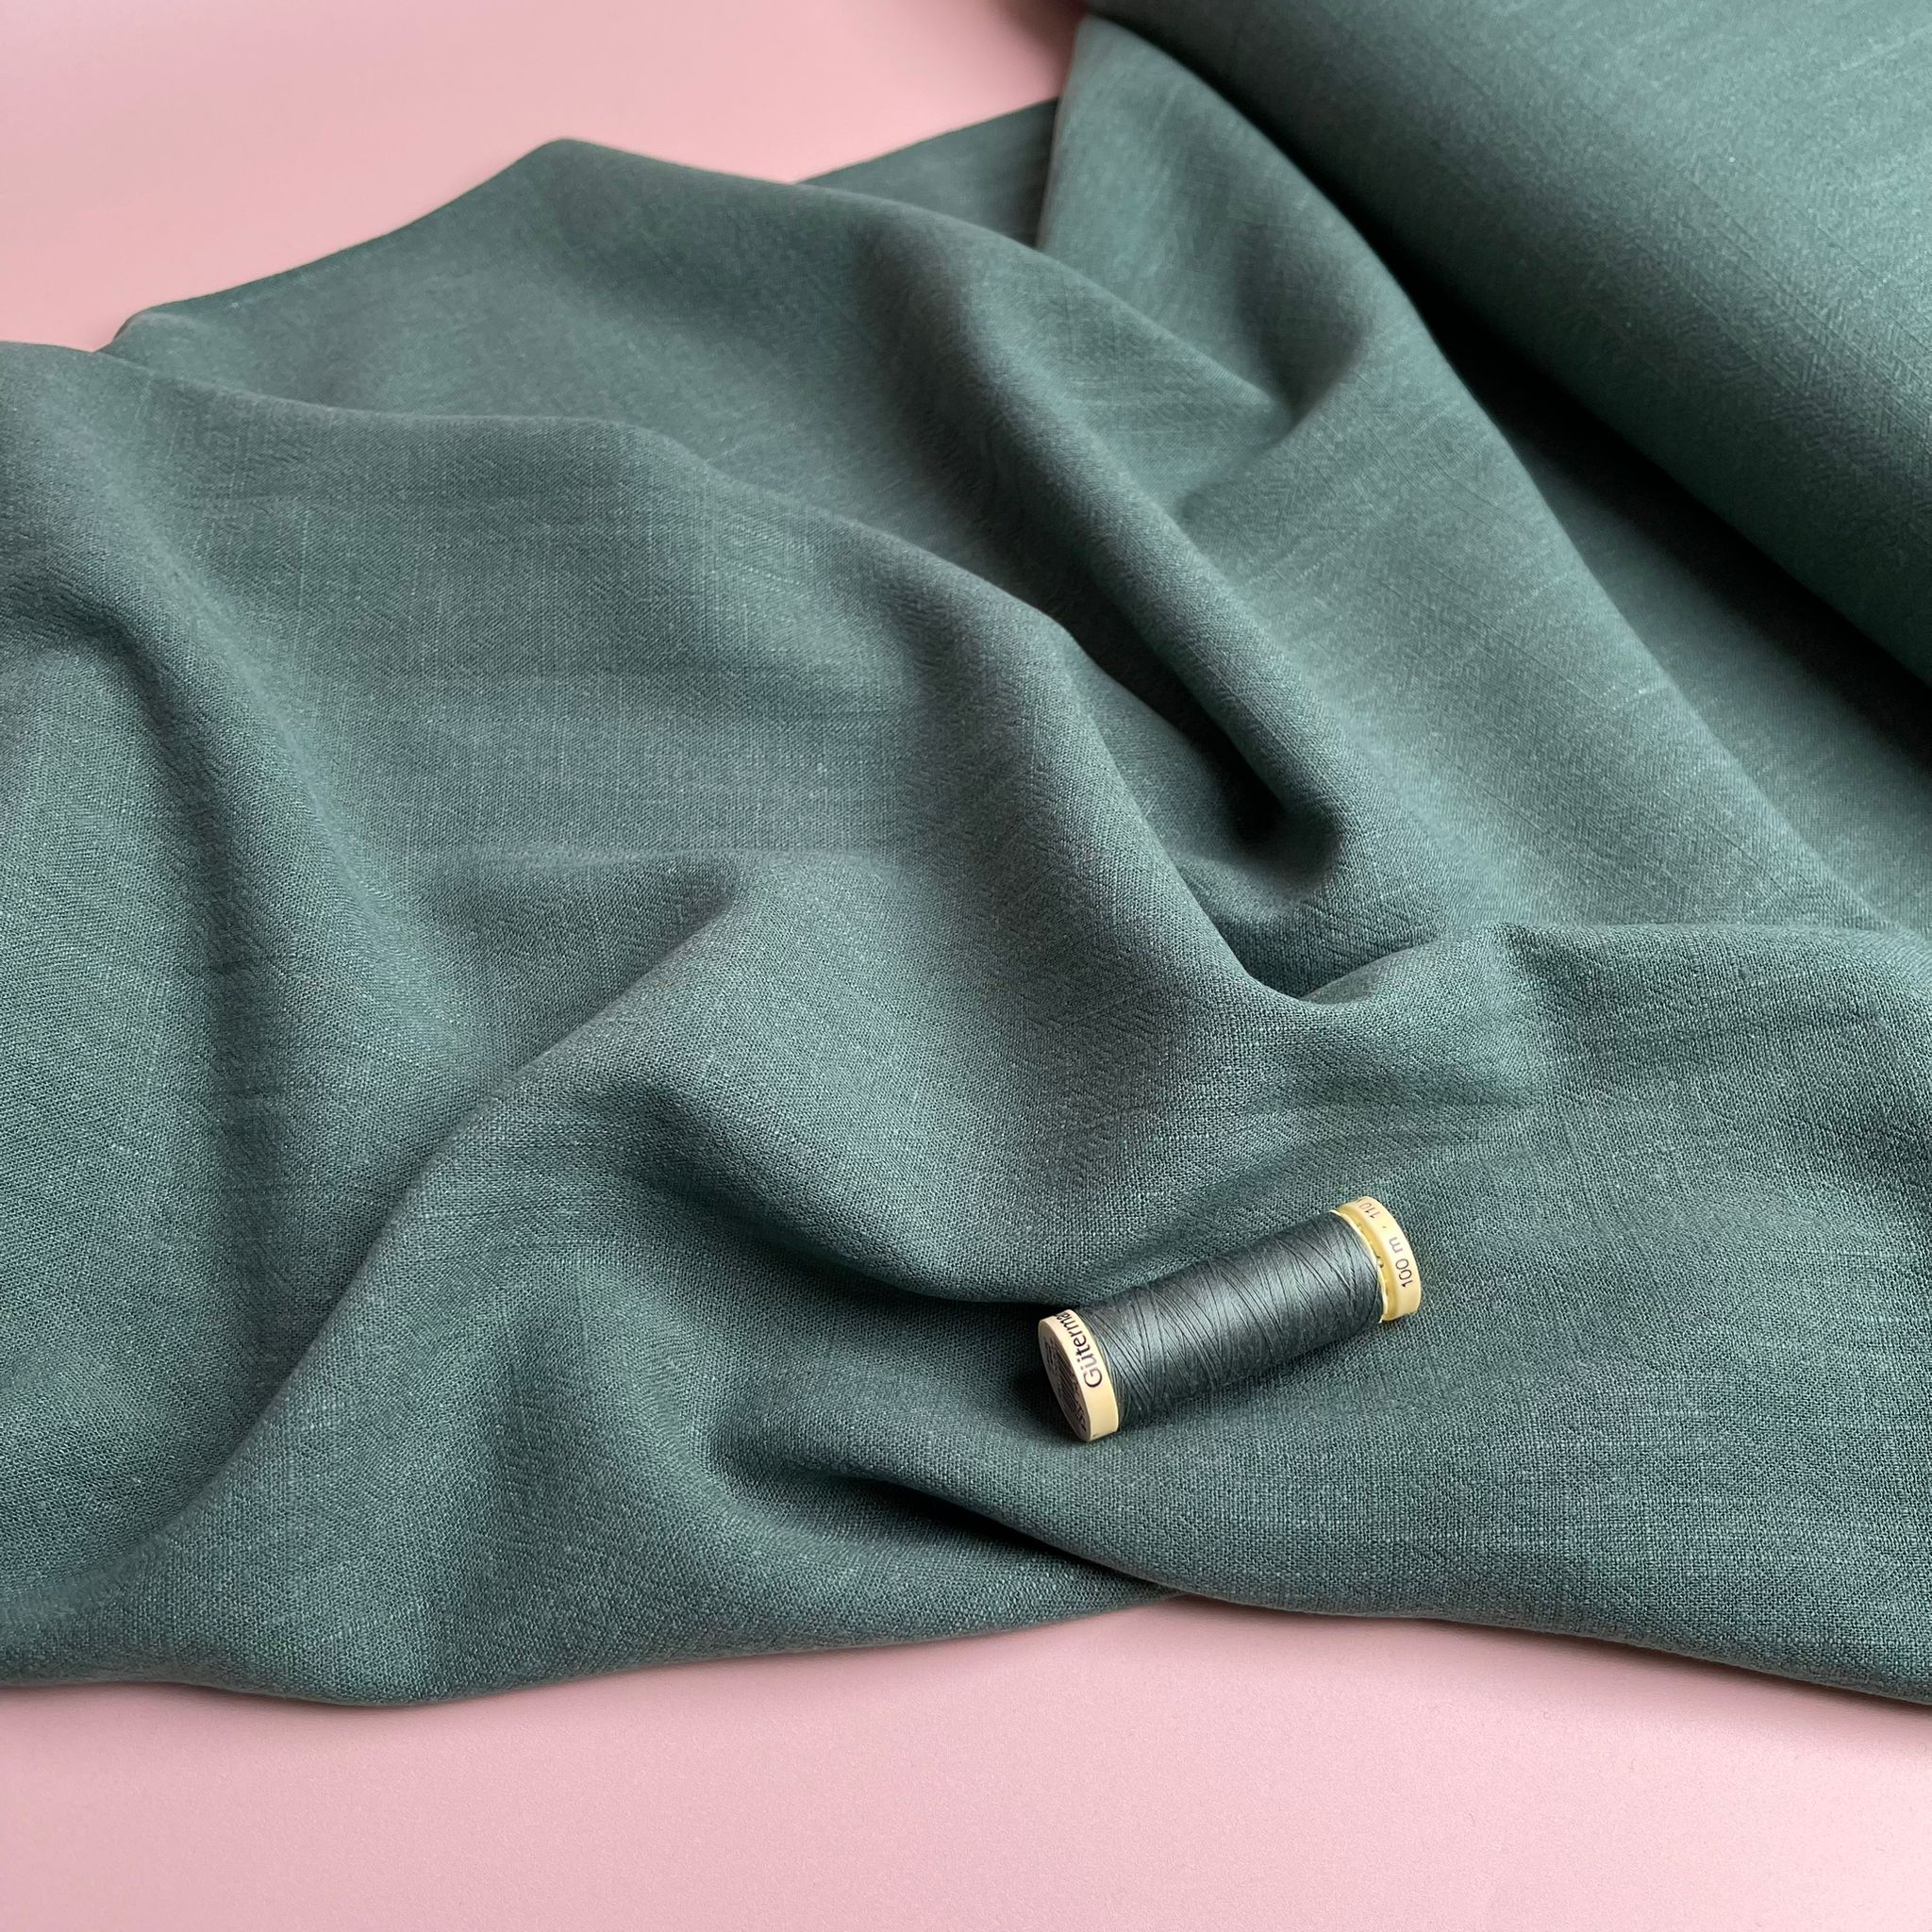 REMNANT 0.74 Metre - Flow Bottle Green Viscose Linen Blend Dress Fabric